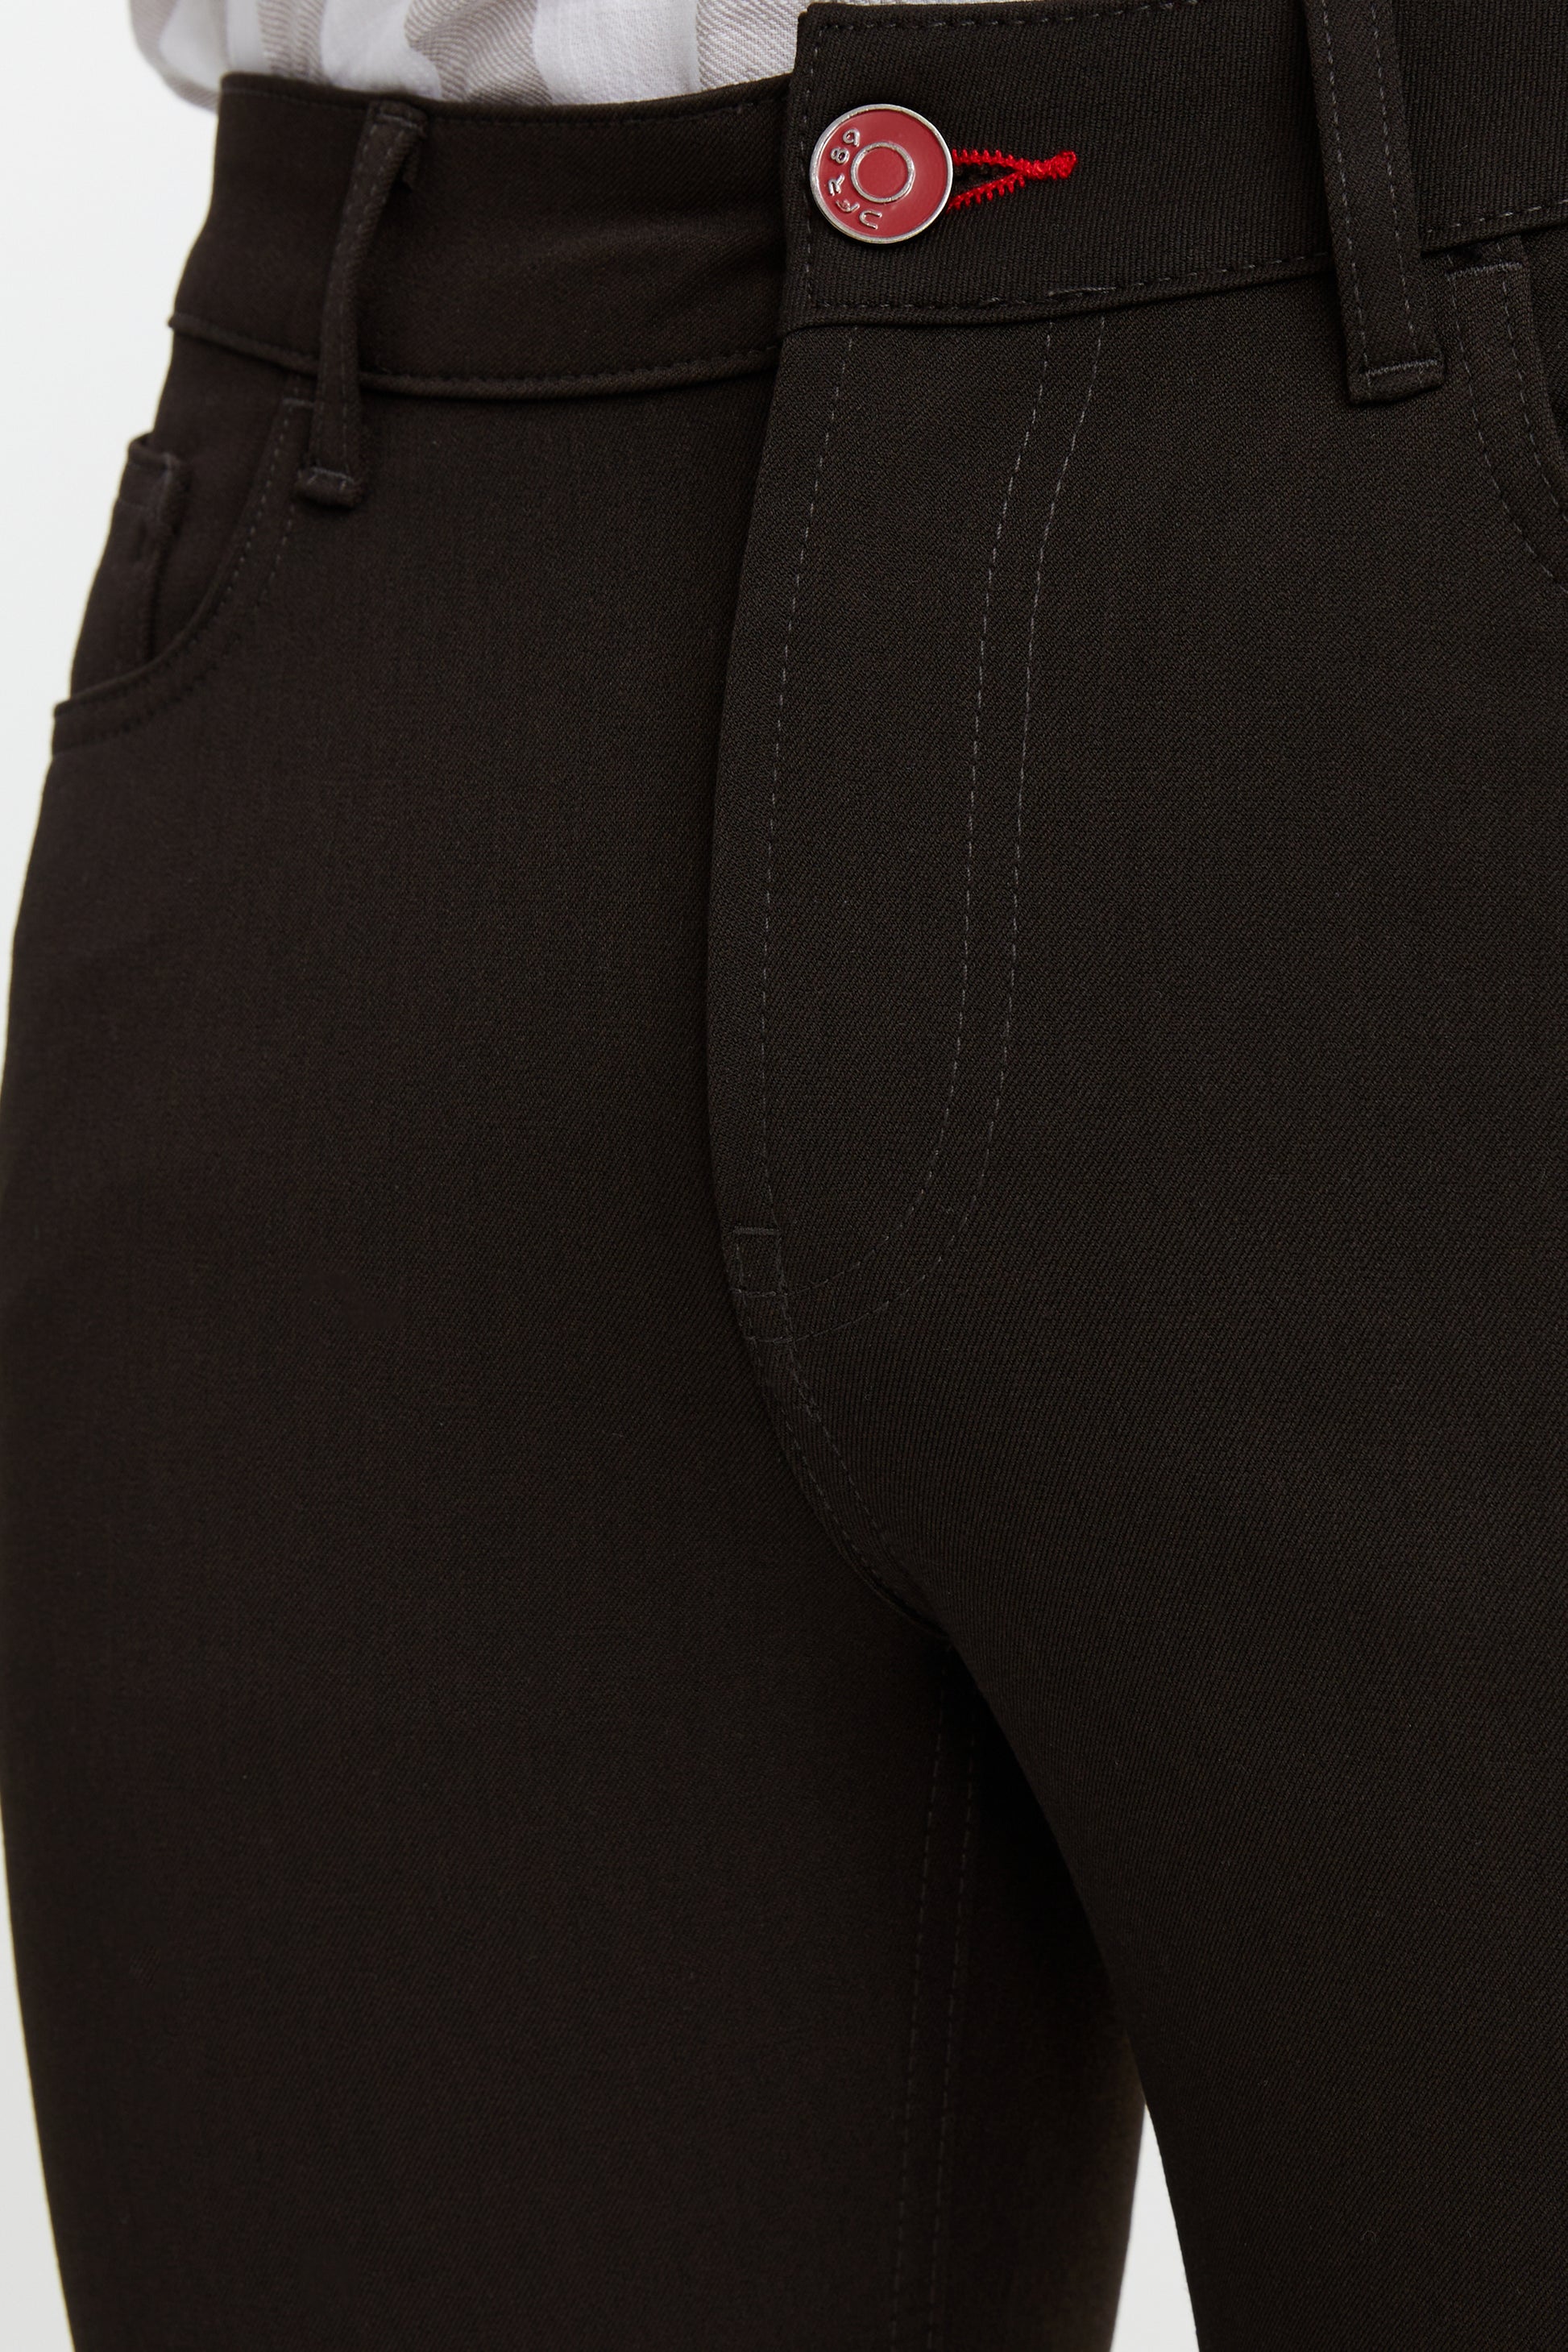 Men's DWR Pants - All in Motion Black M - عيادات أبوميزر لطب الأسنان